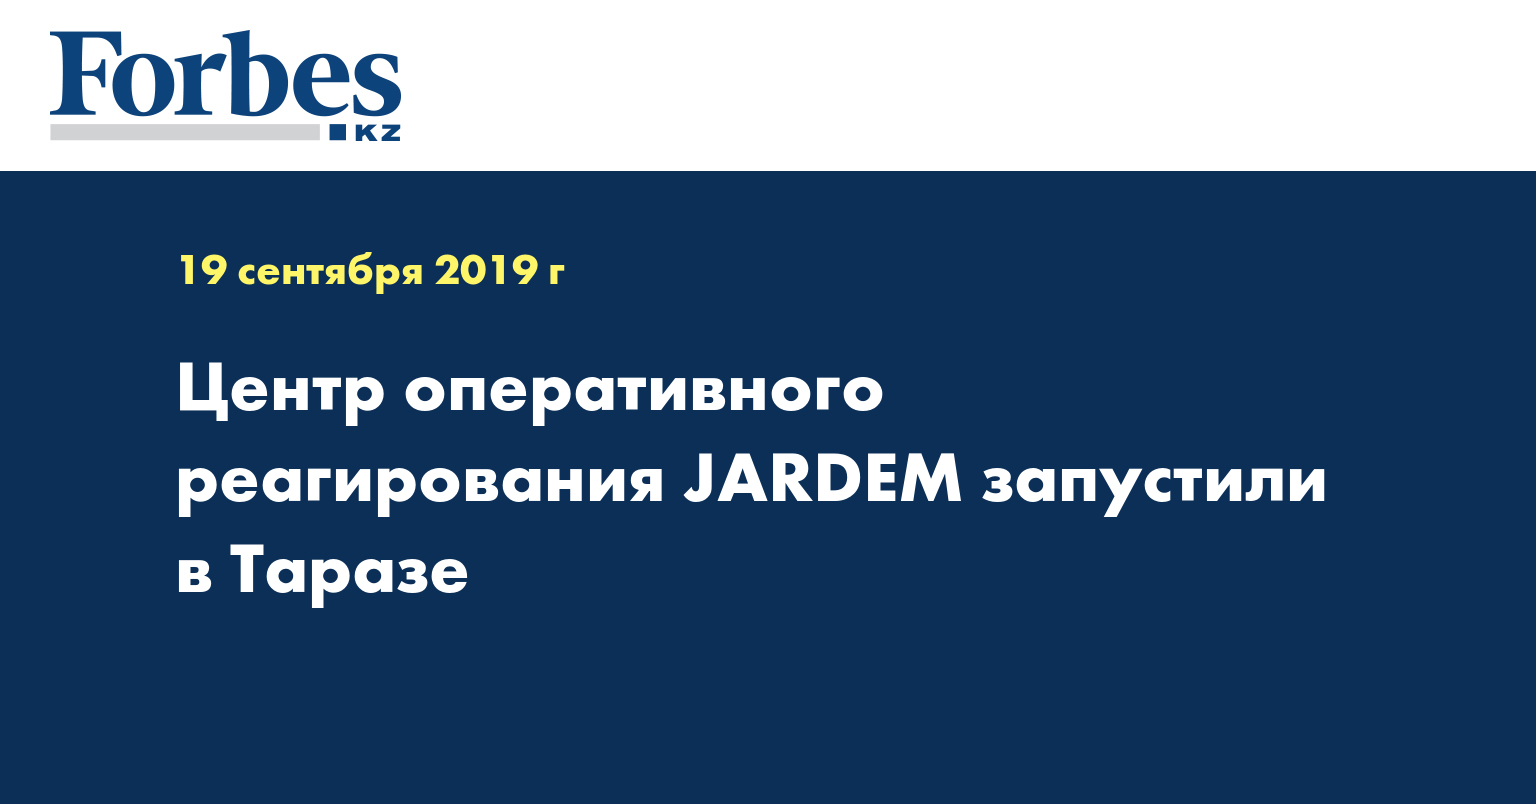 Центр оперативного реагирования JARDEM запустили в Таразе